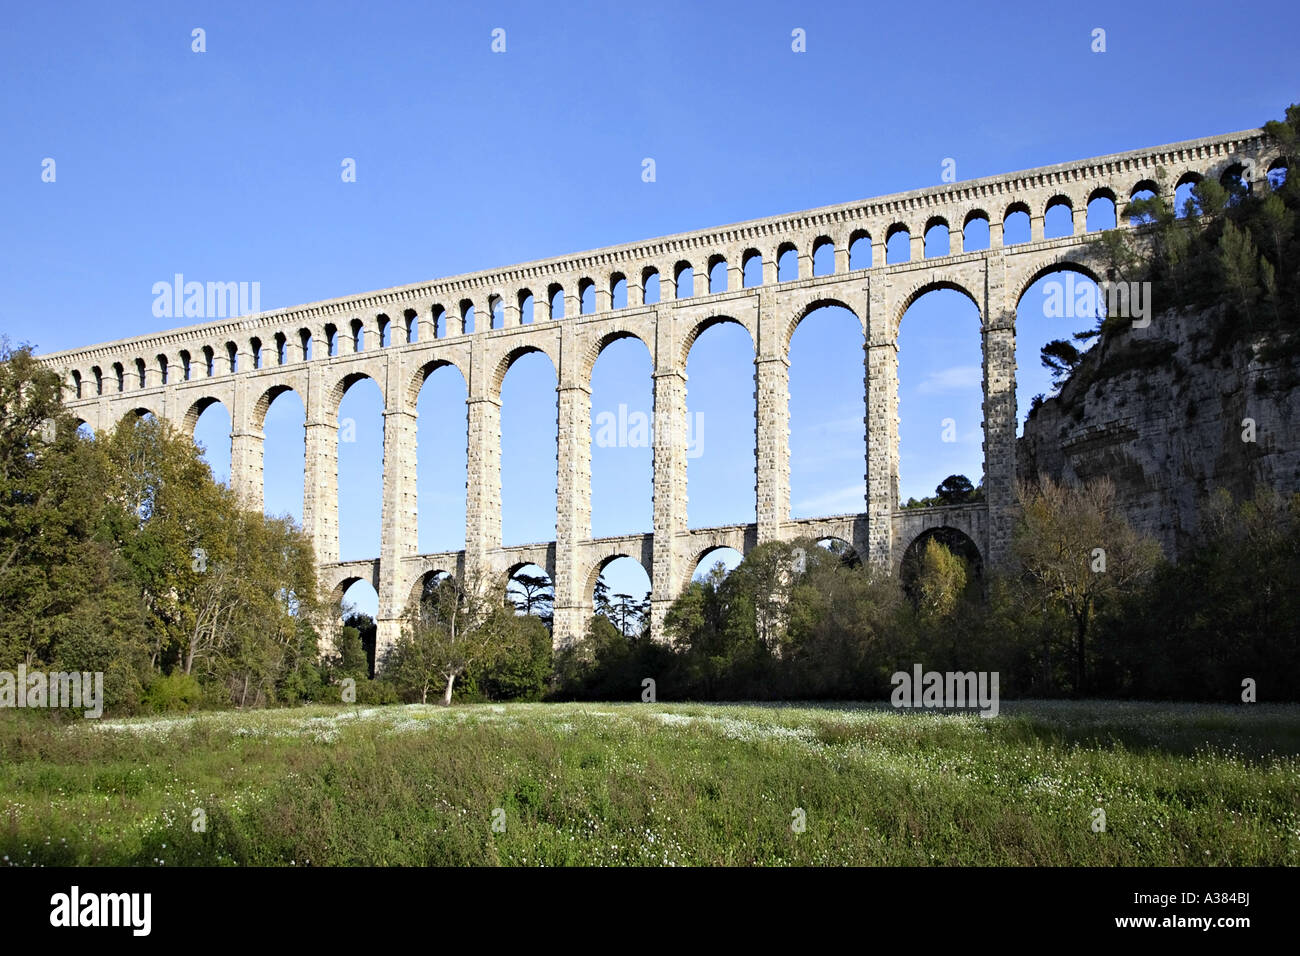 Roquefavour aqueduct near Aix en Provence, France. Stock Photo